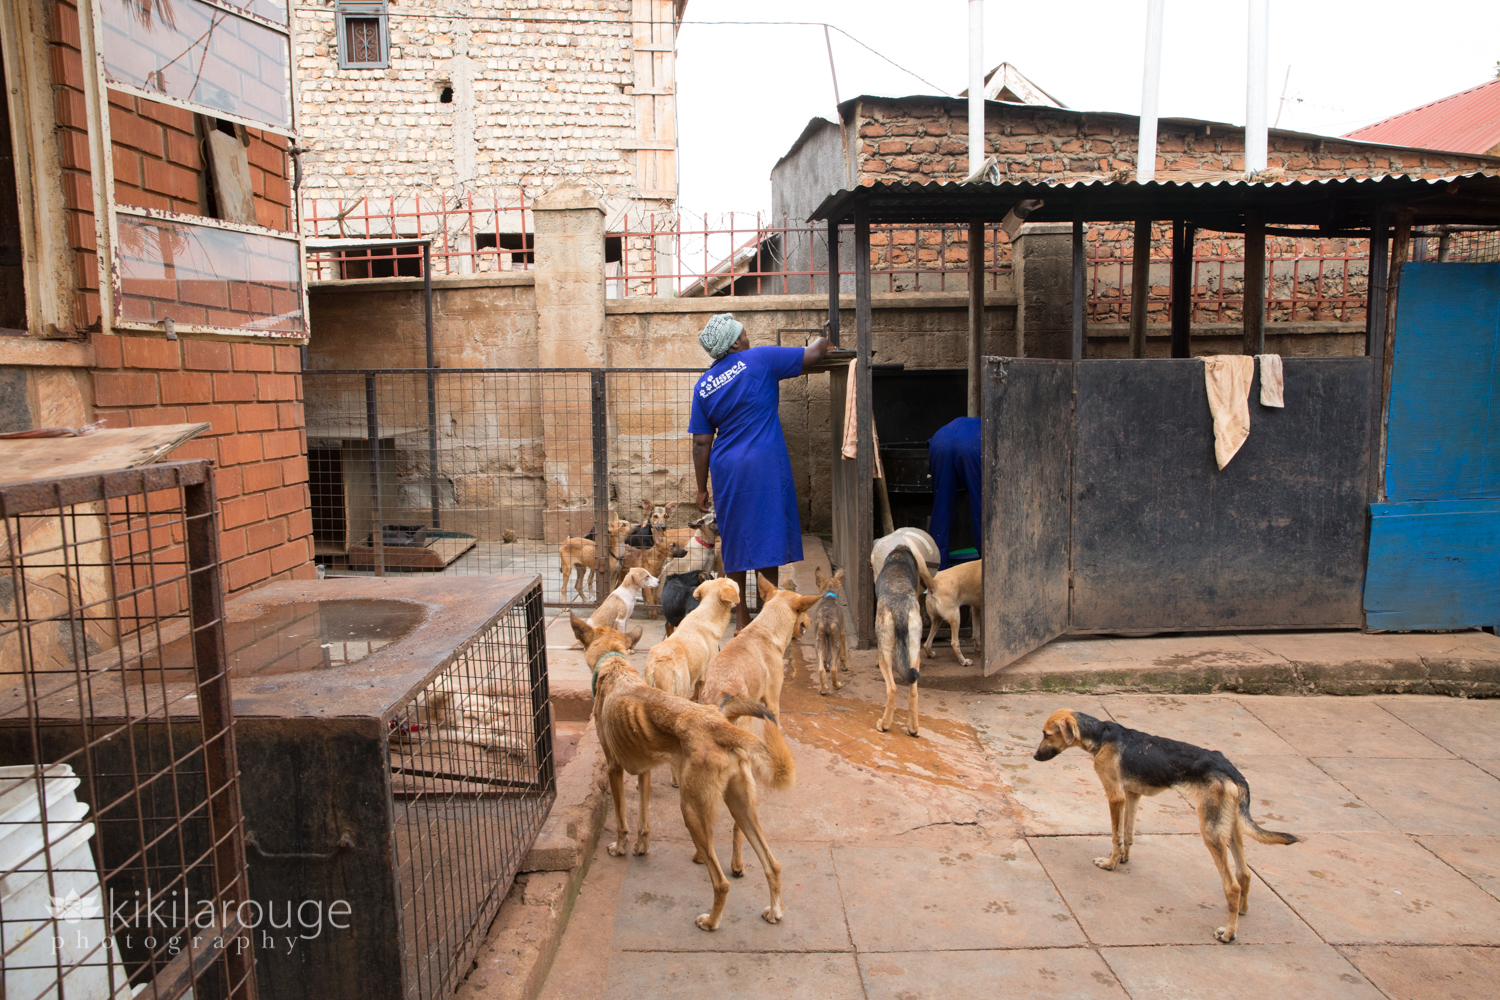 Woman working at Uganda Animal Shelter